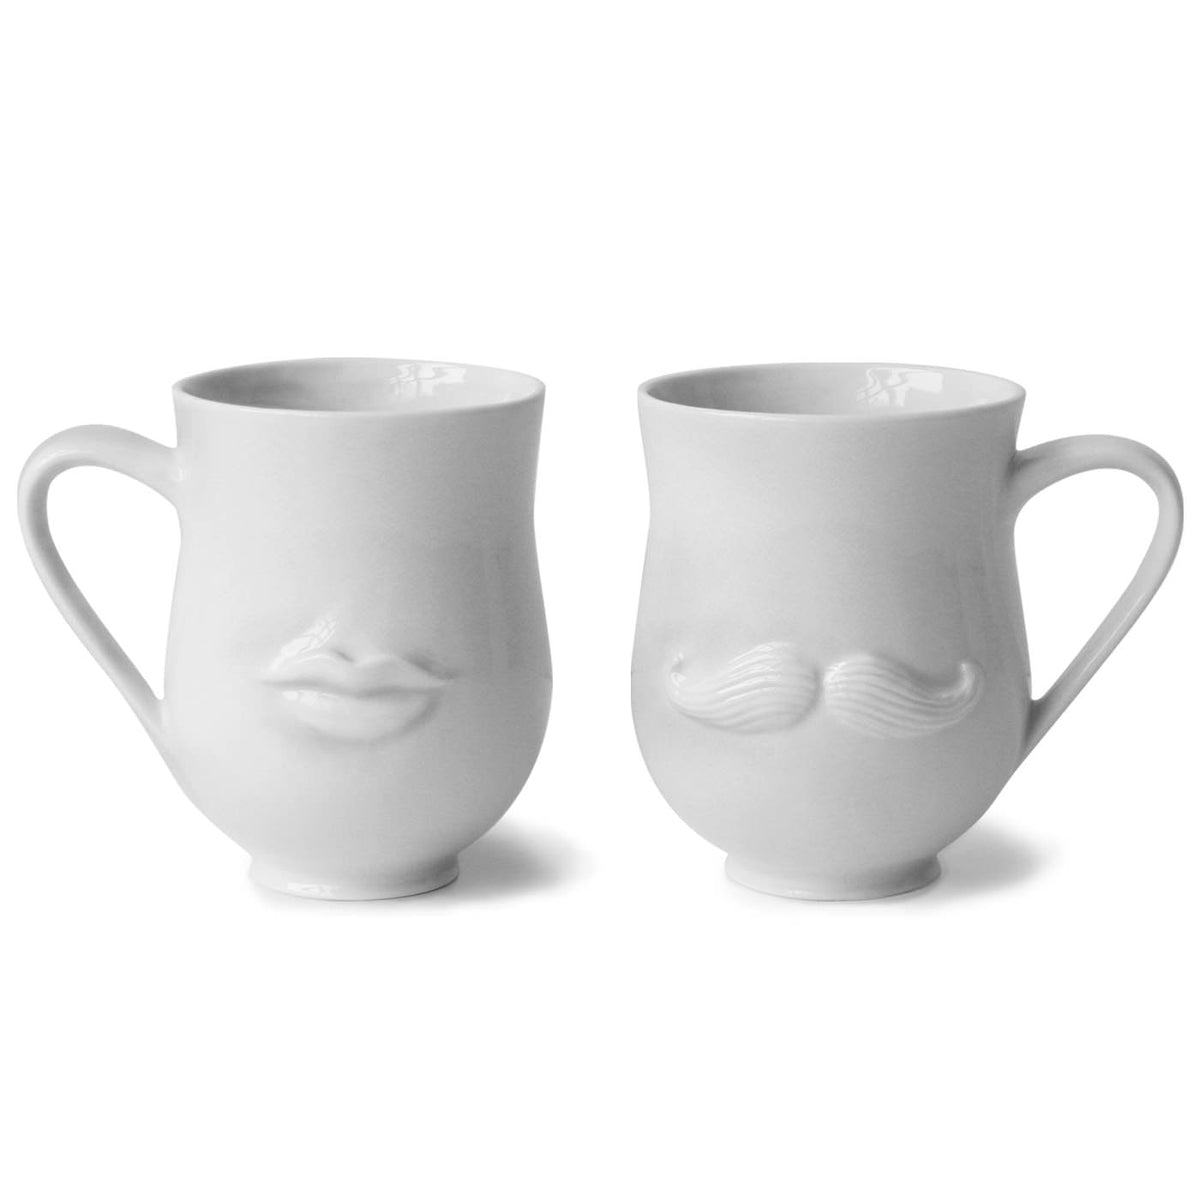 Mr & Mrs Muse Reversible Mug. Jonathan Adler
